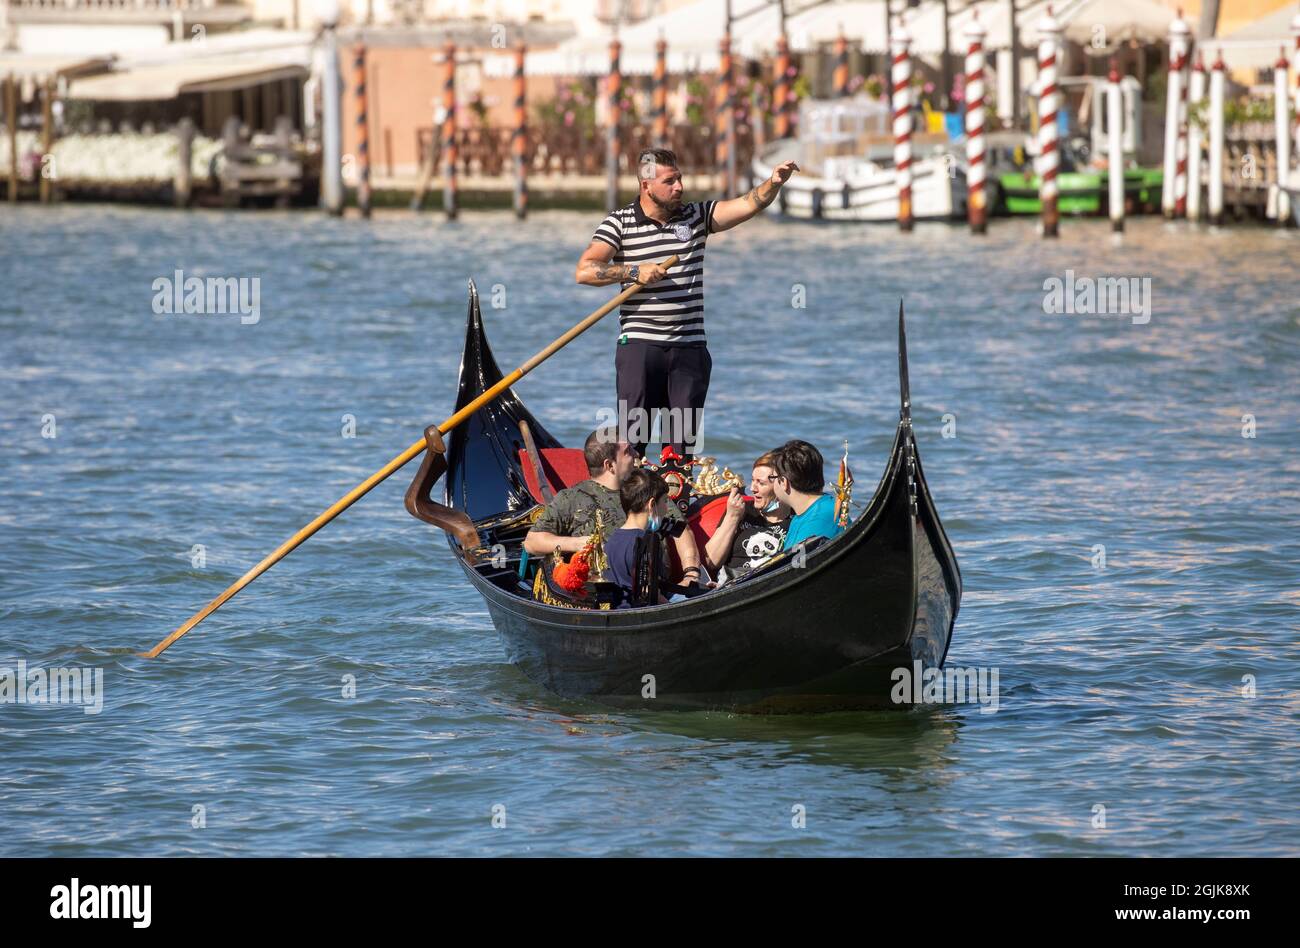 Eine Gondel auf dem Canal Grande in Venedig, die bei San Marco in die Lagune führt. Touristen genießen die wunderschöne Architektur Venedigs von einer Gondel aus. Stockfoto